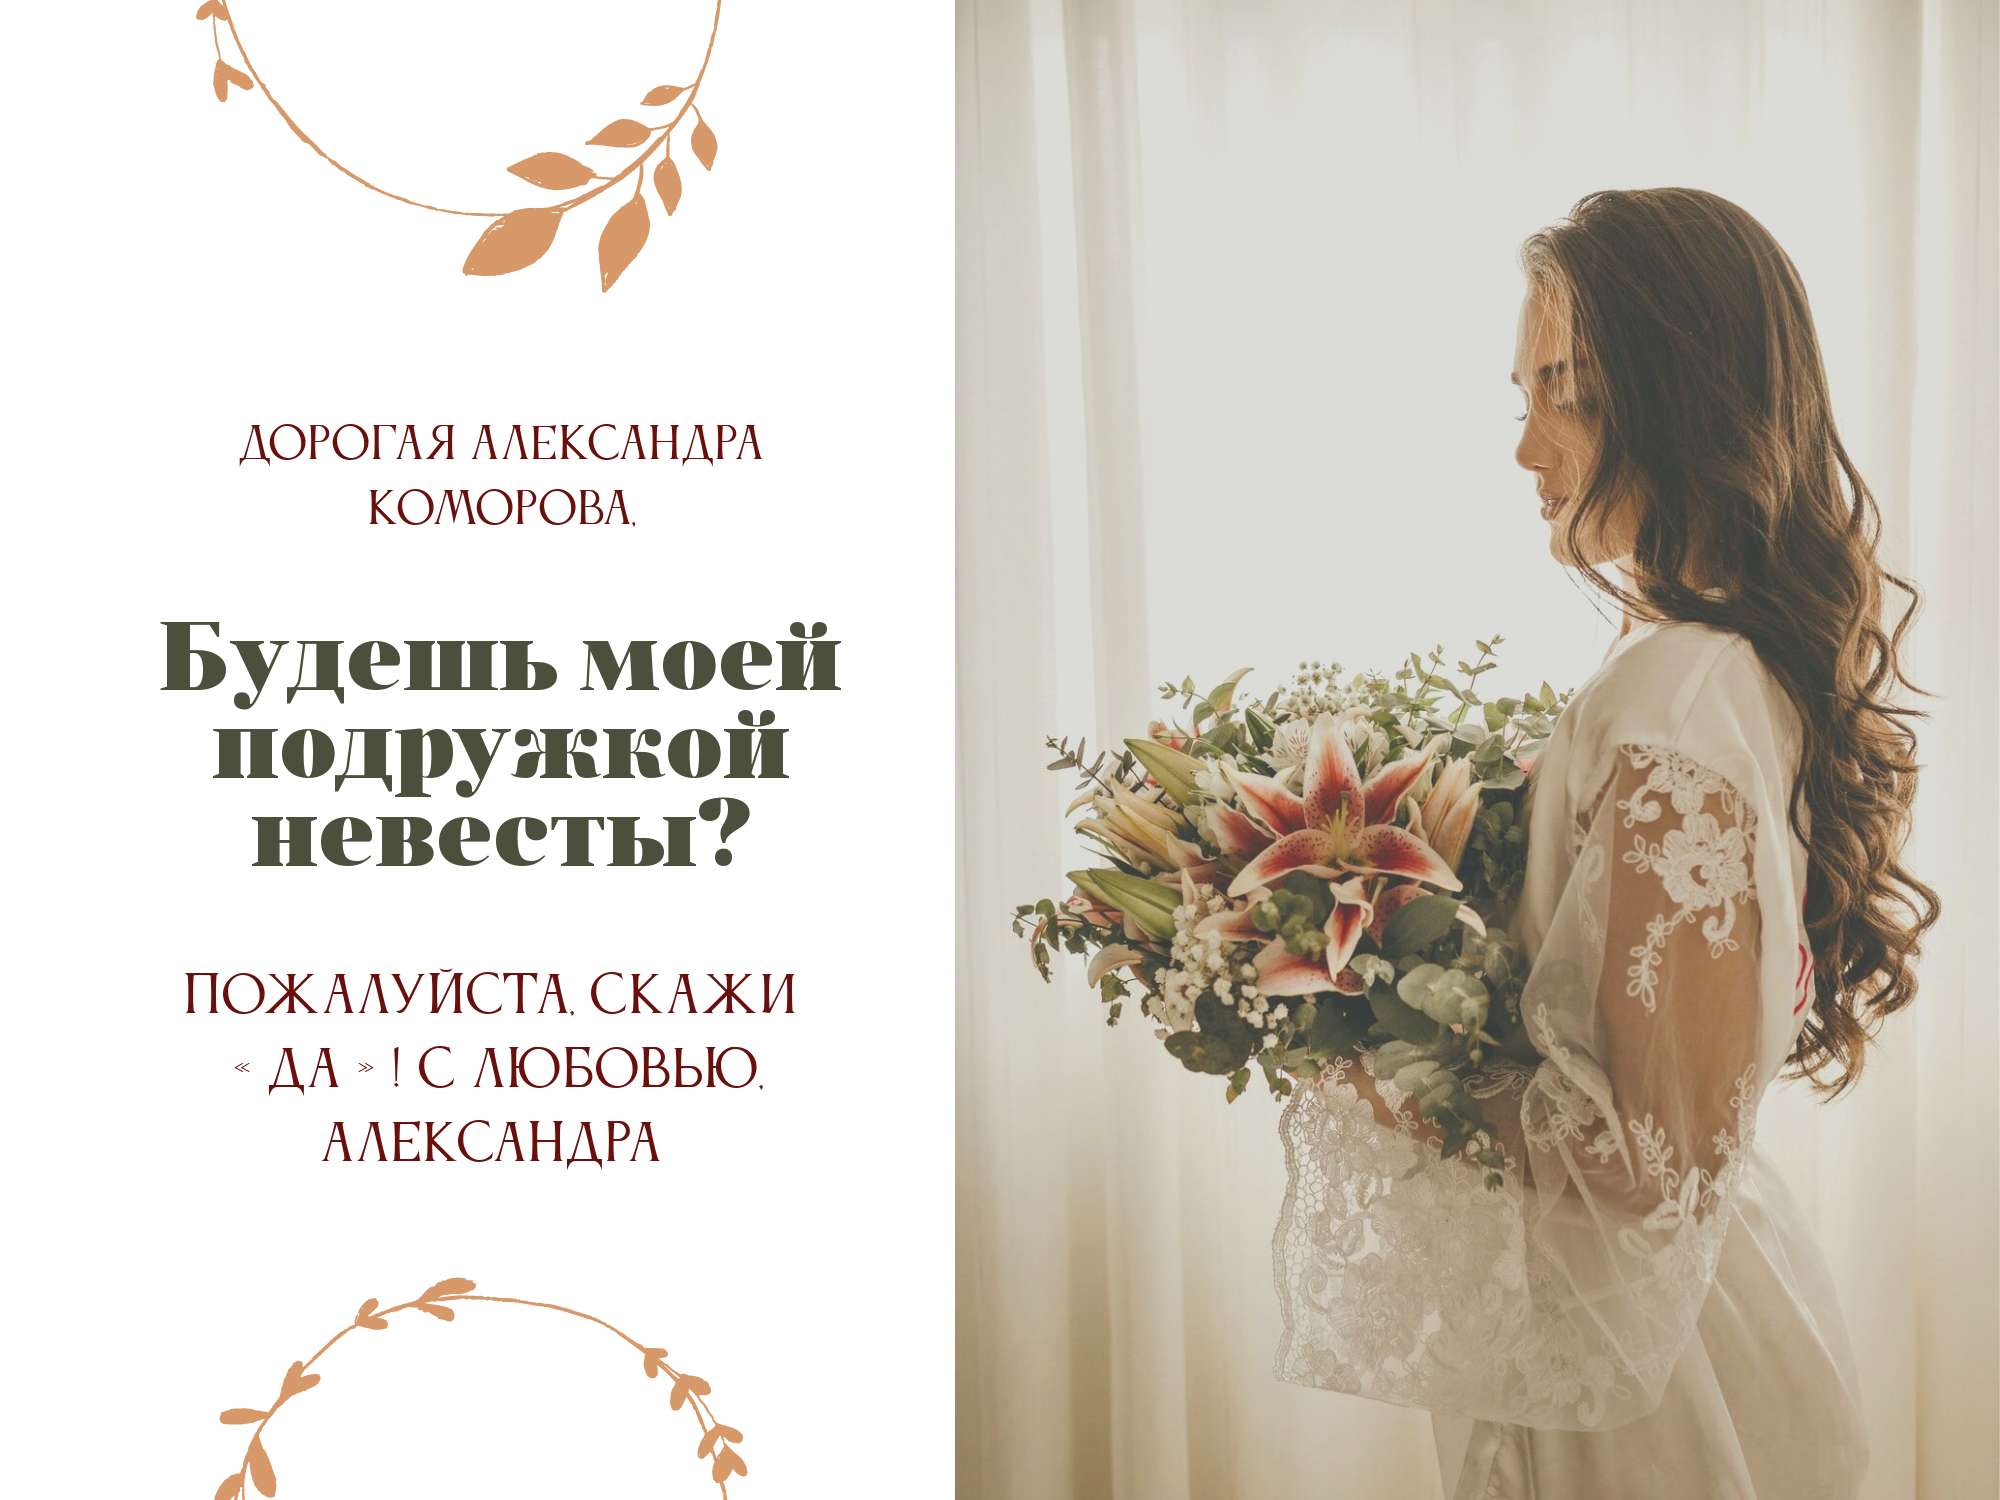 Стильная открытка приглашение для подруги от невесты, с местом для фото и готовым текстом и декором